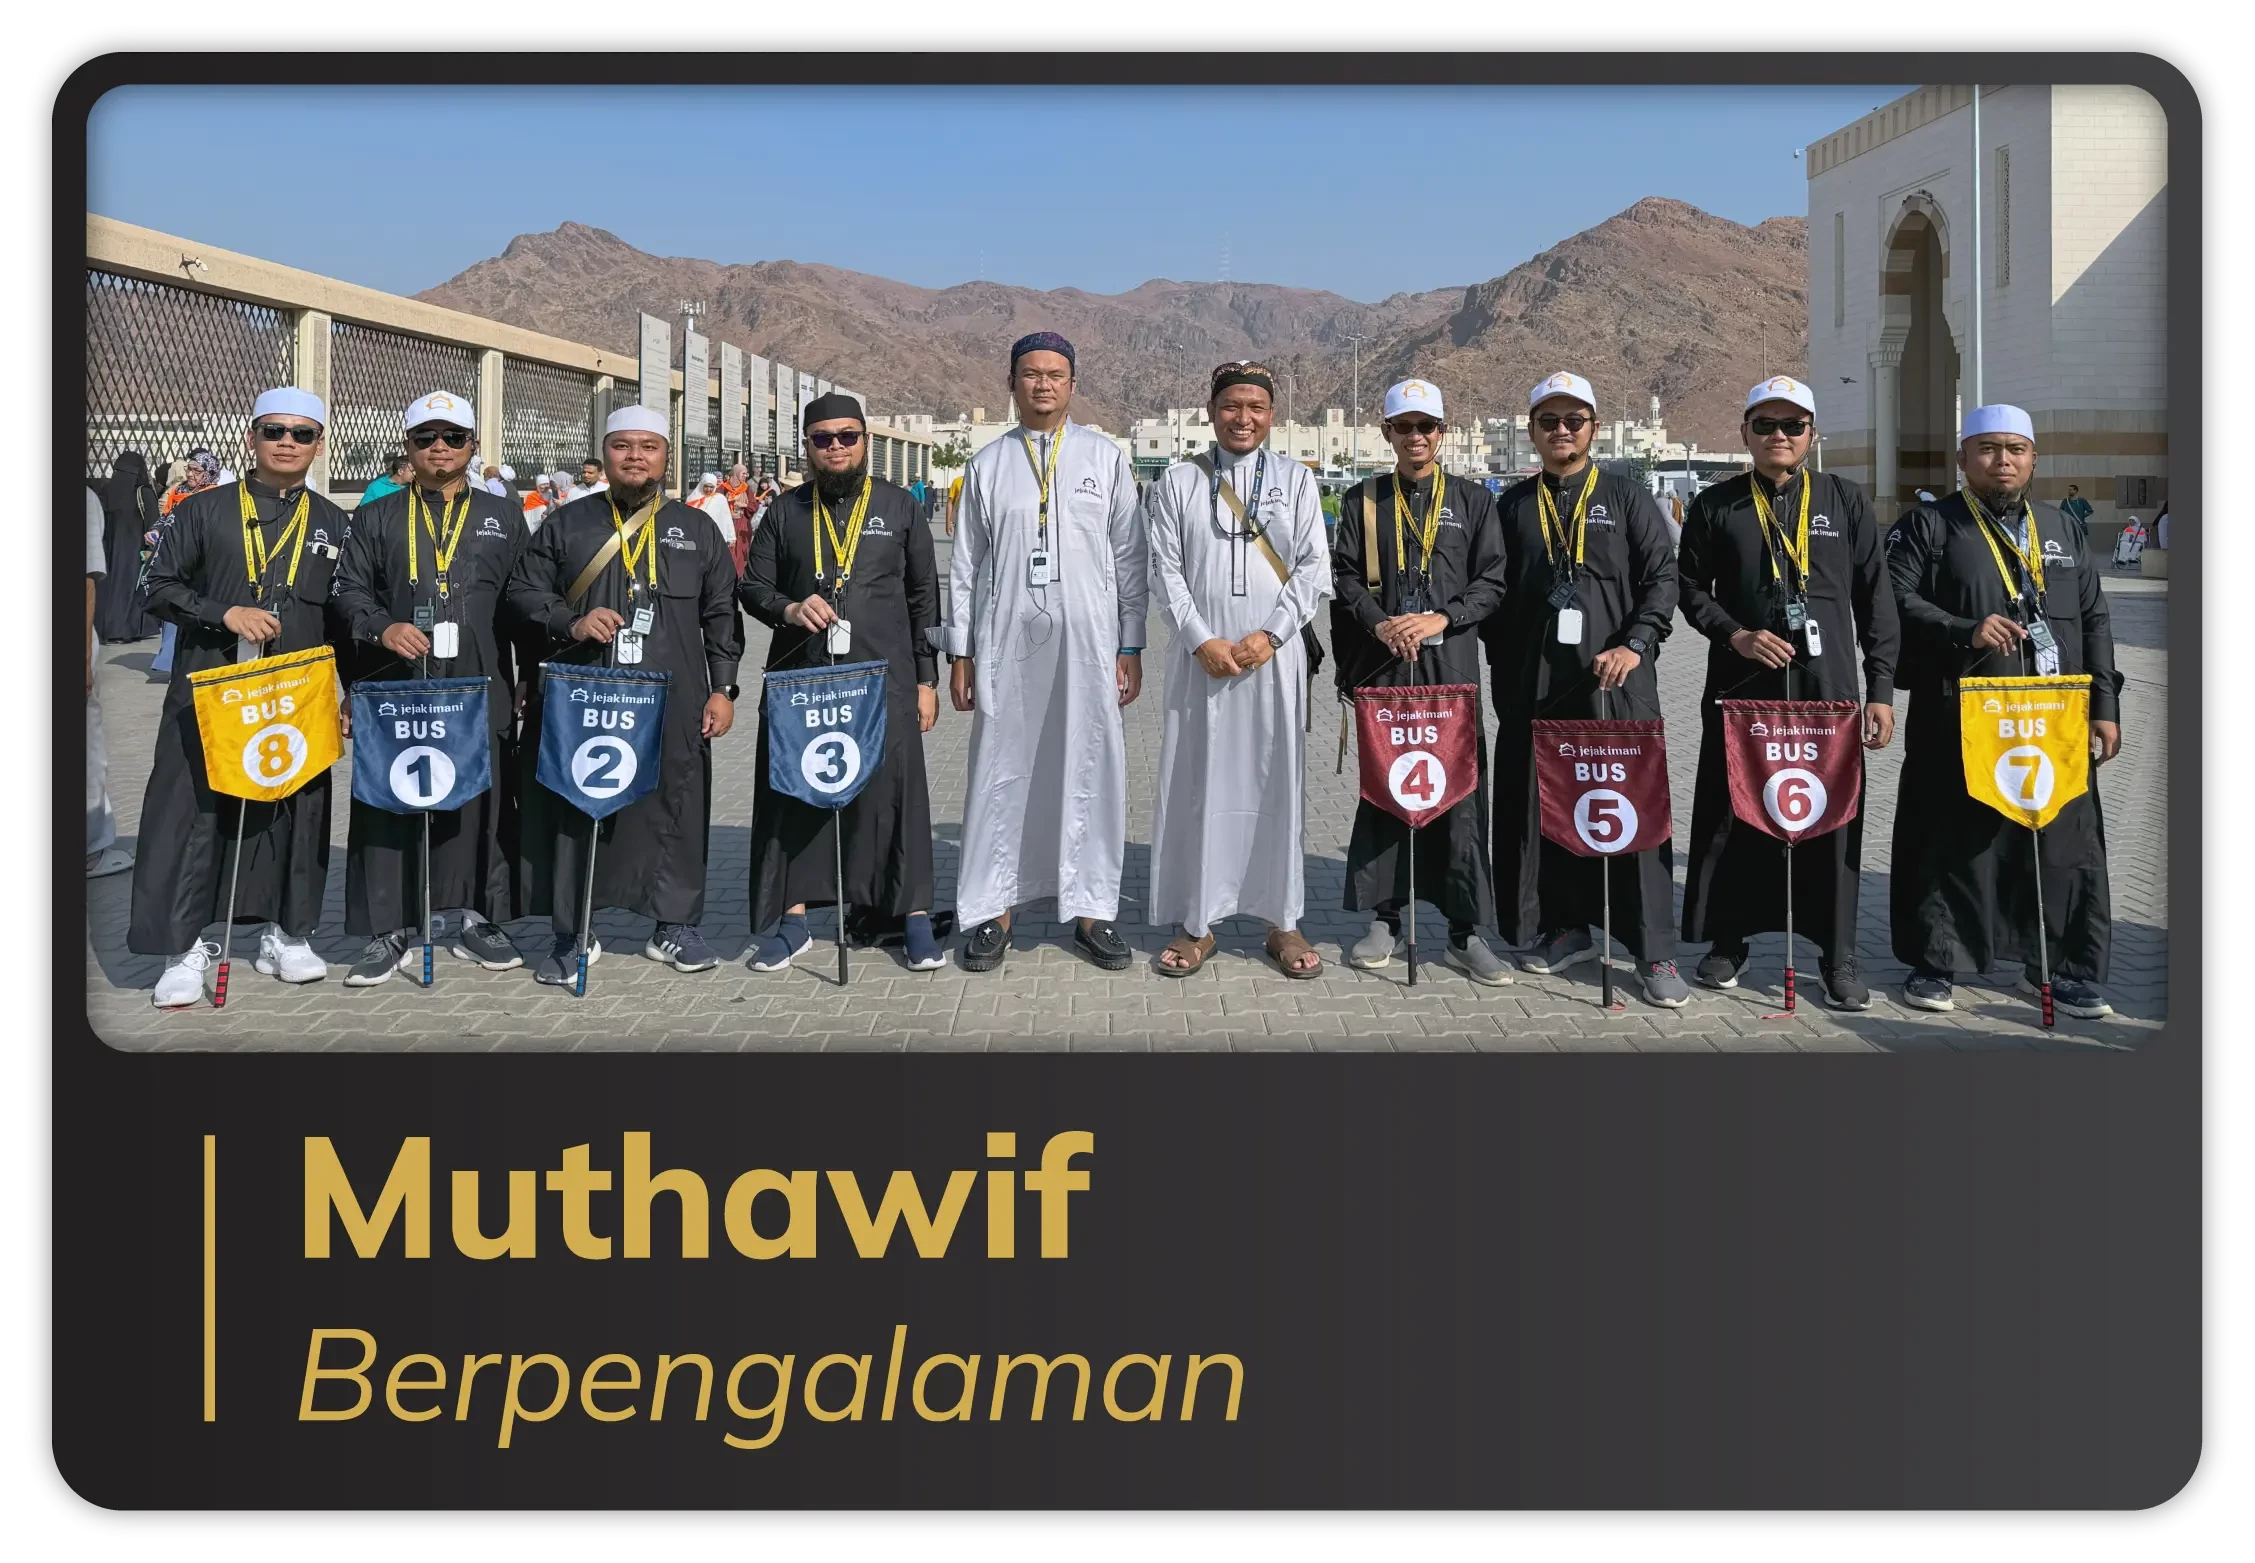 Muthawif Berpengalaman